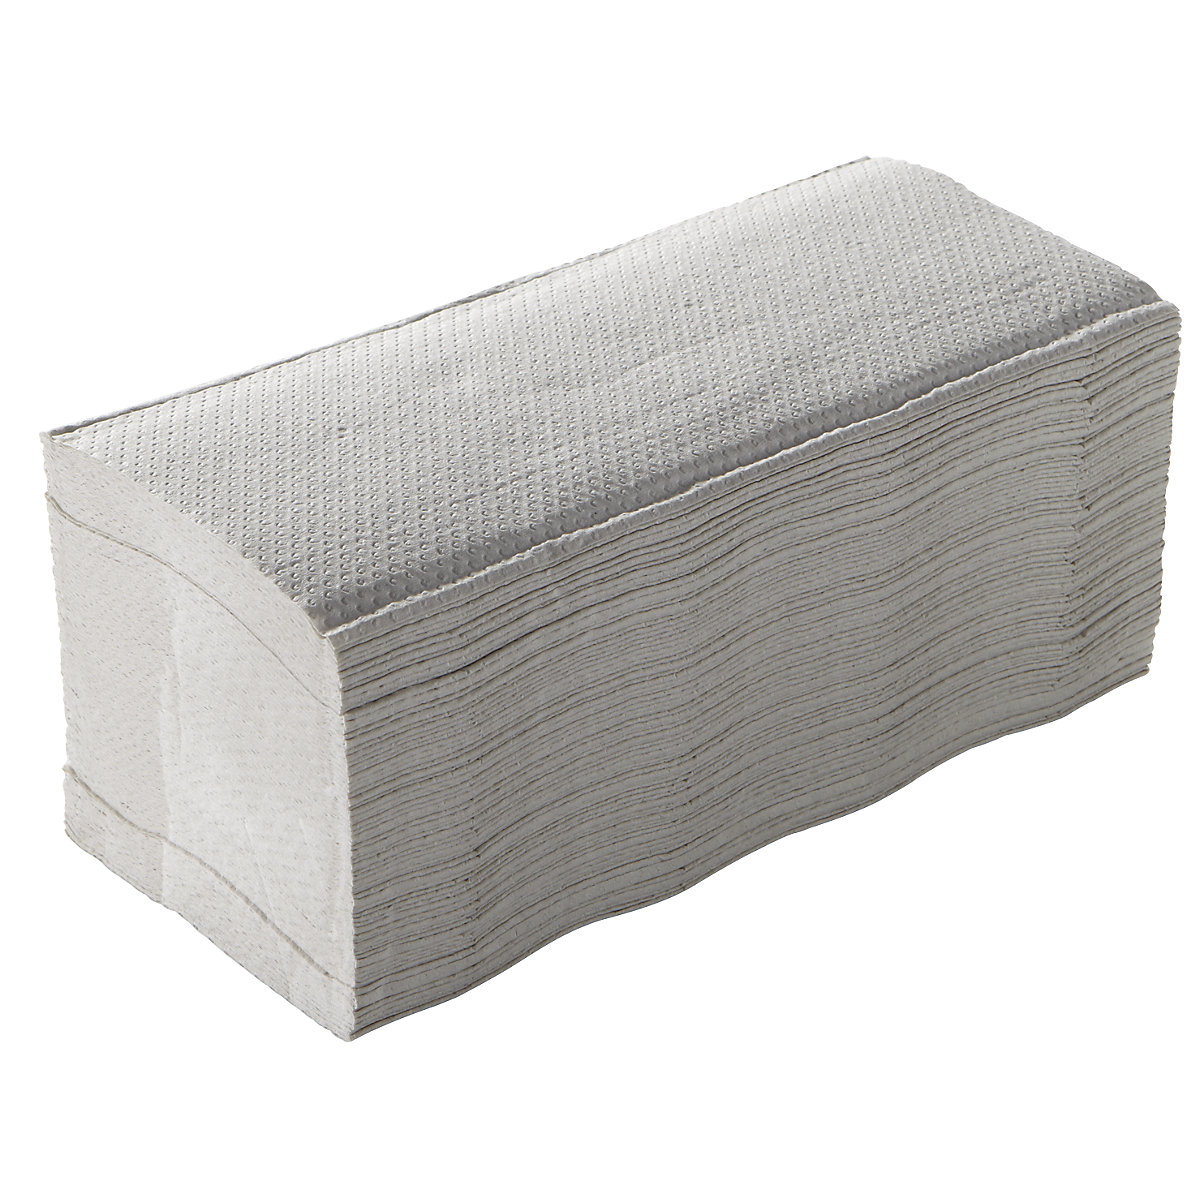 Serviettes pliées en C – CWS, papier gaufré, blanc, lot de 2880 serviettes